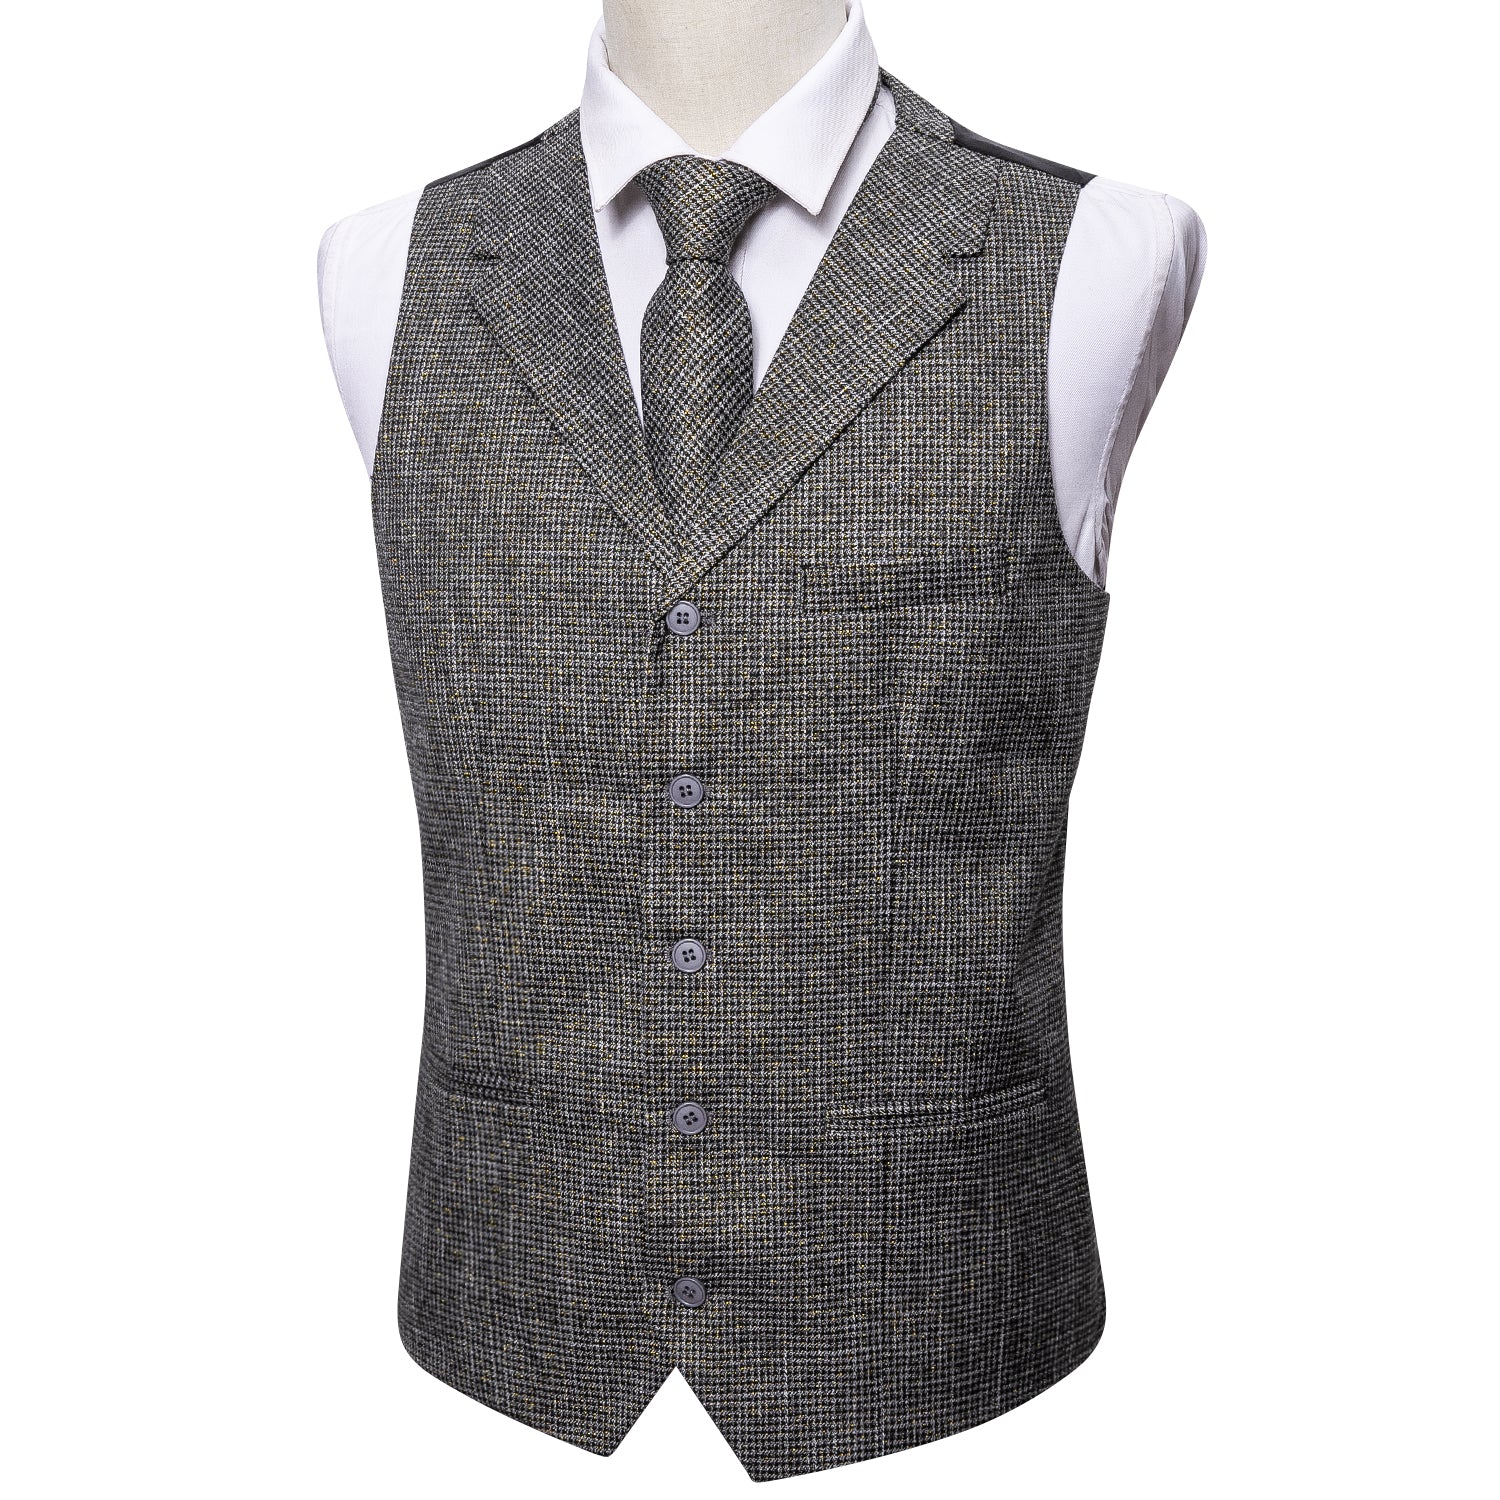 grey suit with vest